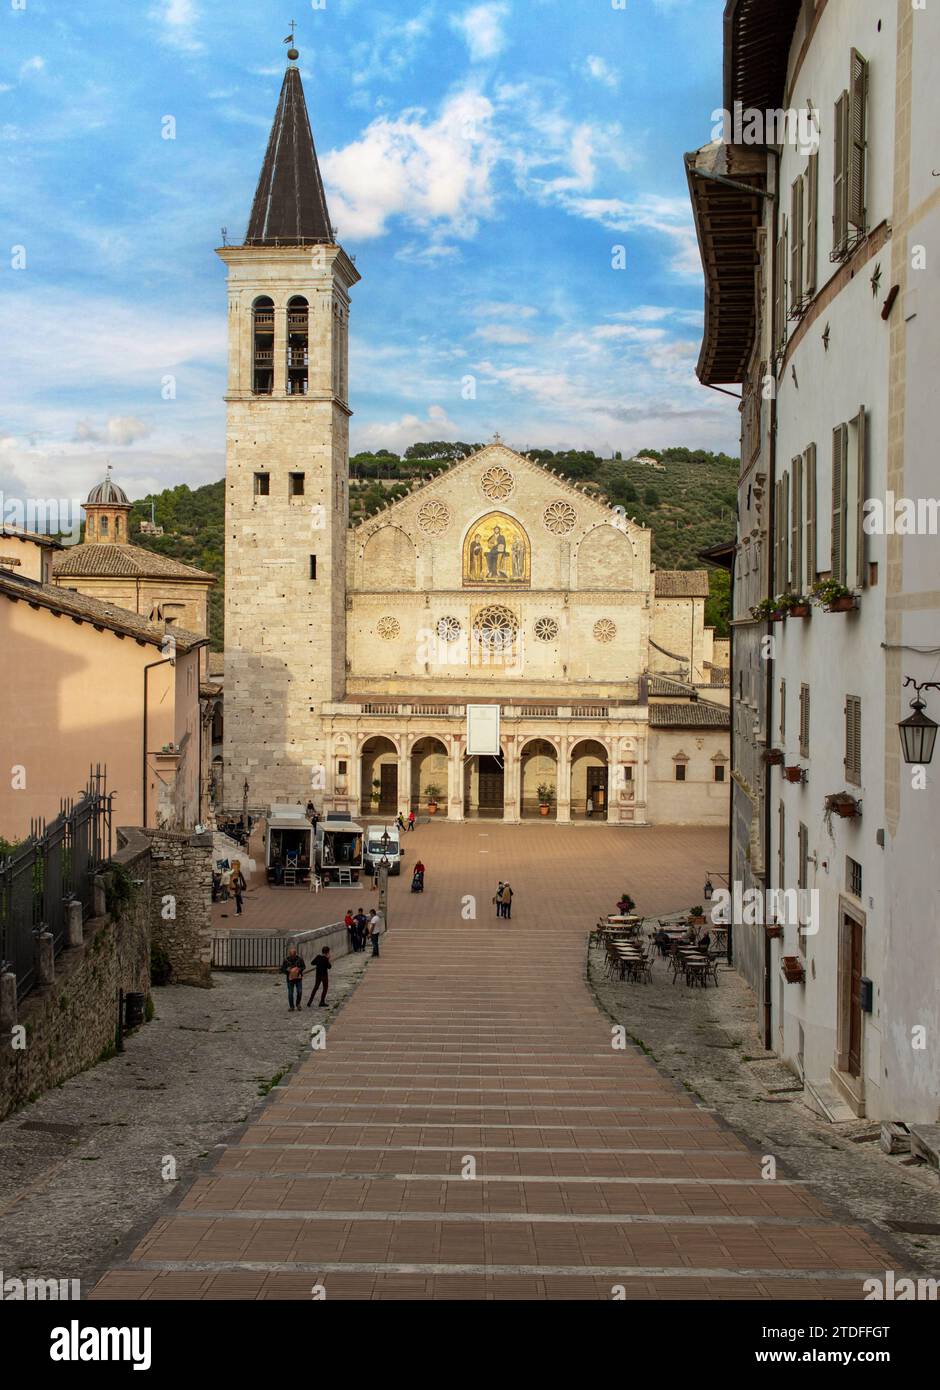 Spoleto, Italia - uno dei borghi più belli dell'Italia centrale, Spoleto mostra una meravigliosa città vecchia, con la sua famosa cattedrale Foto Stock